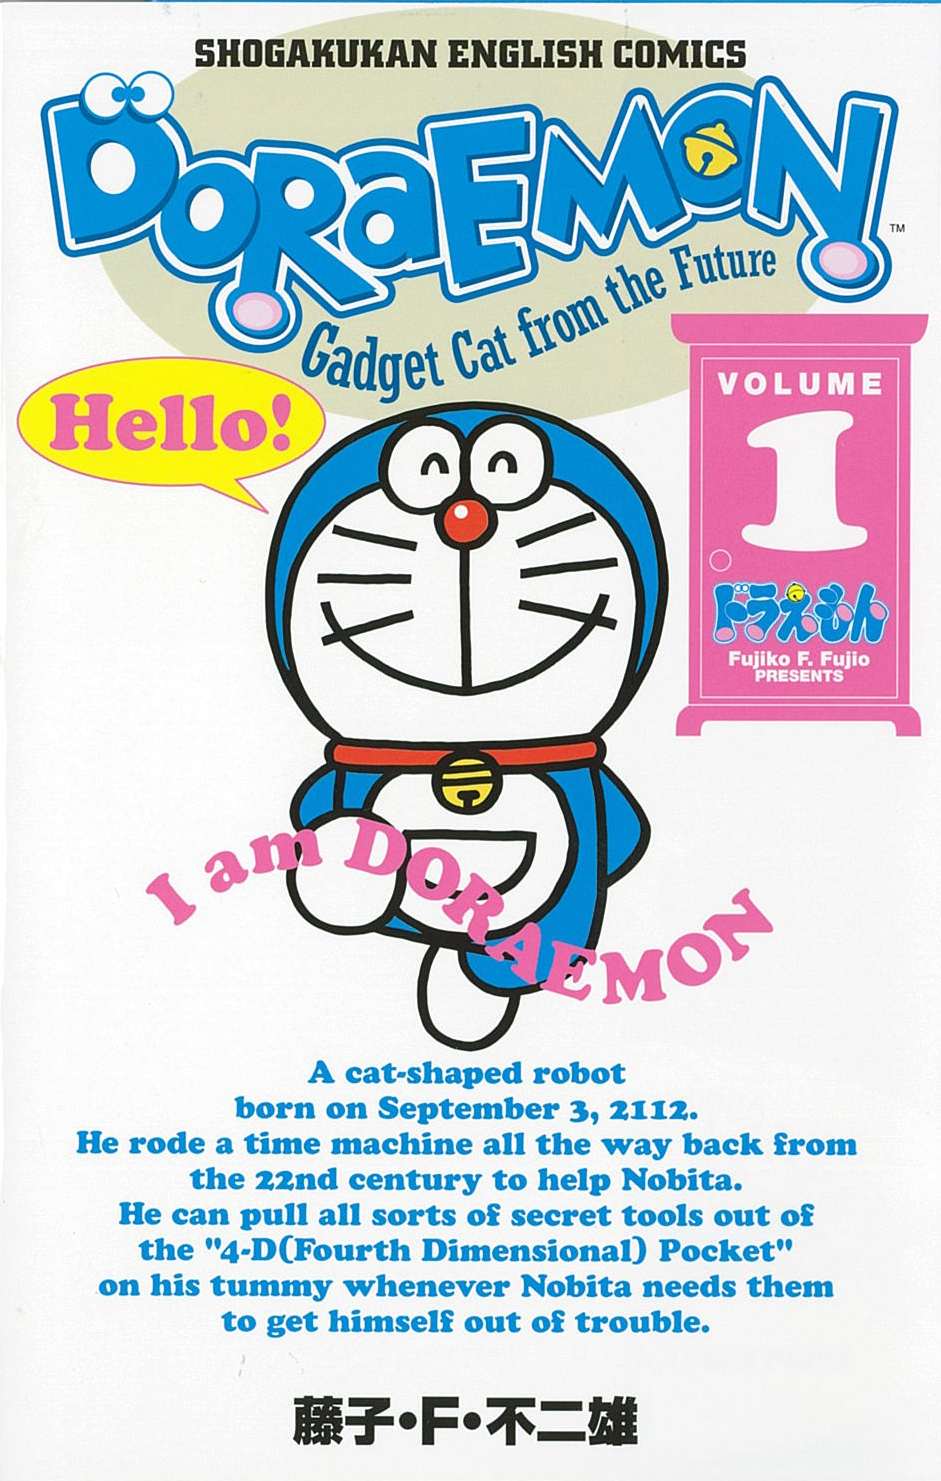 Doraemon: Gadget Cat from the Future (Volume 1)